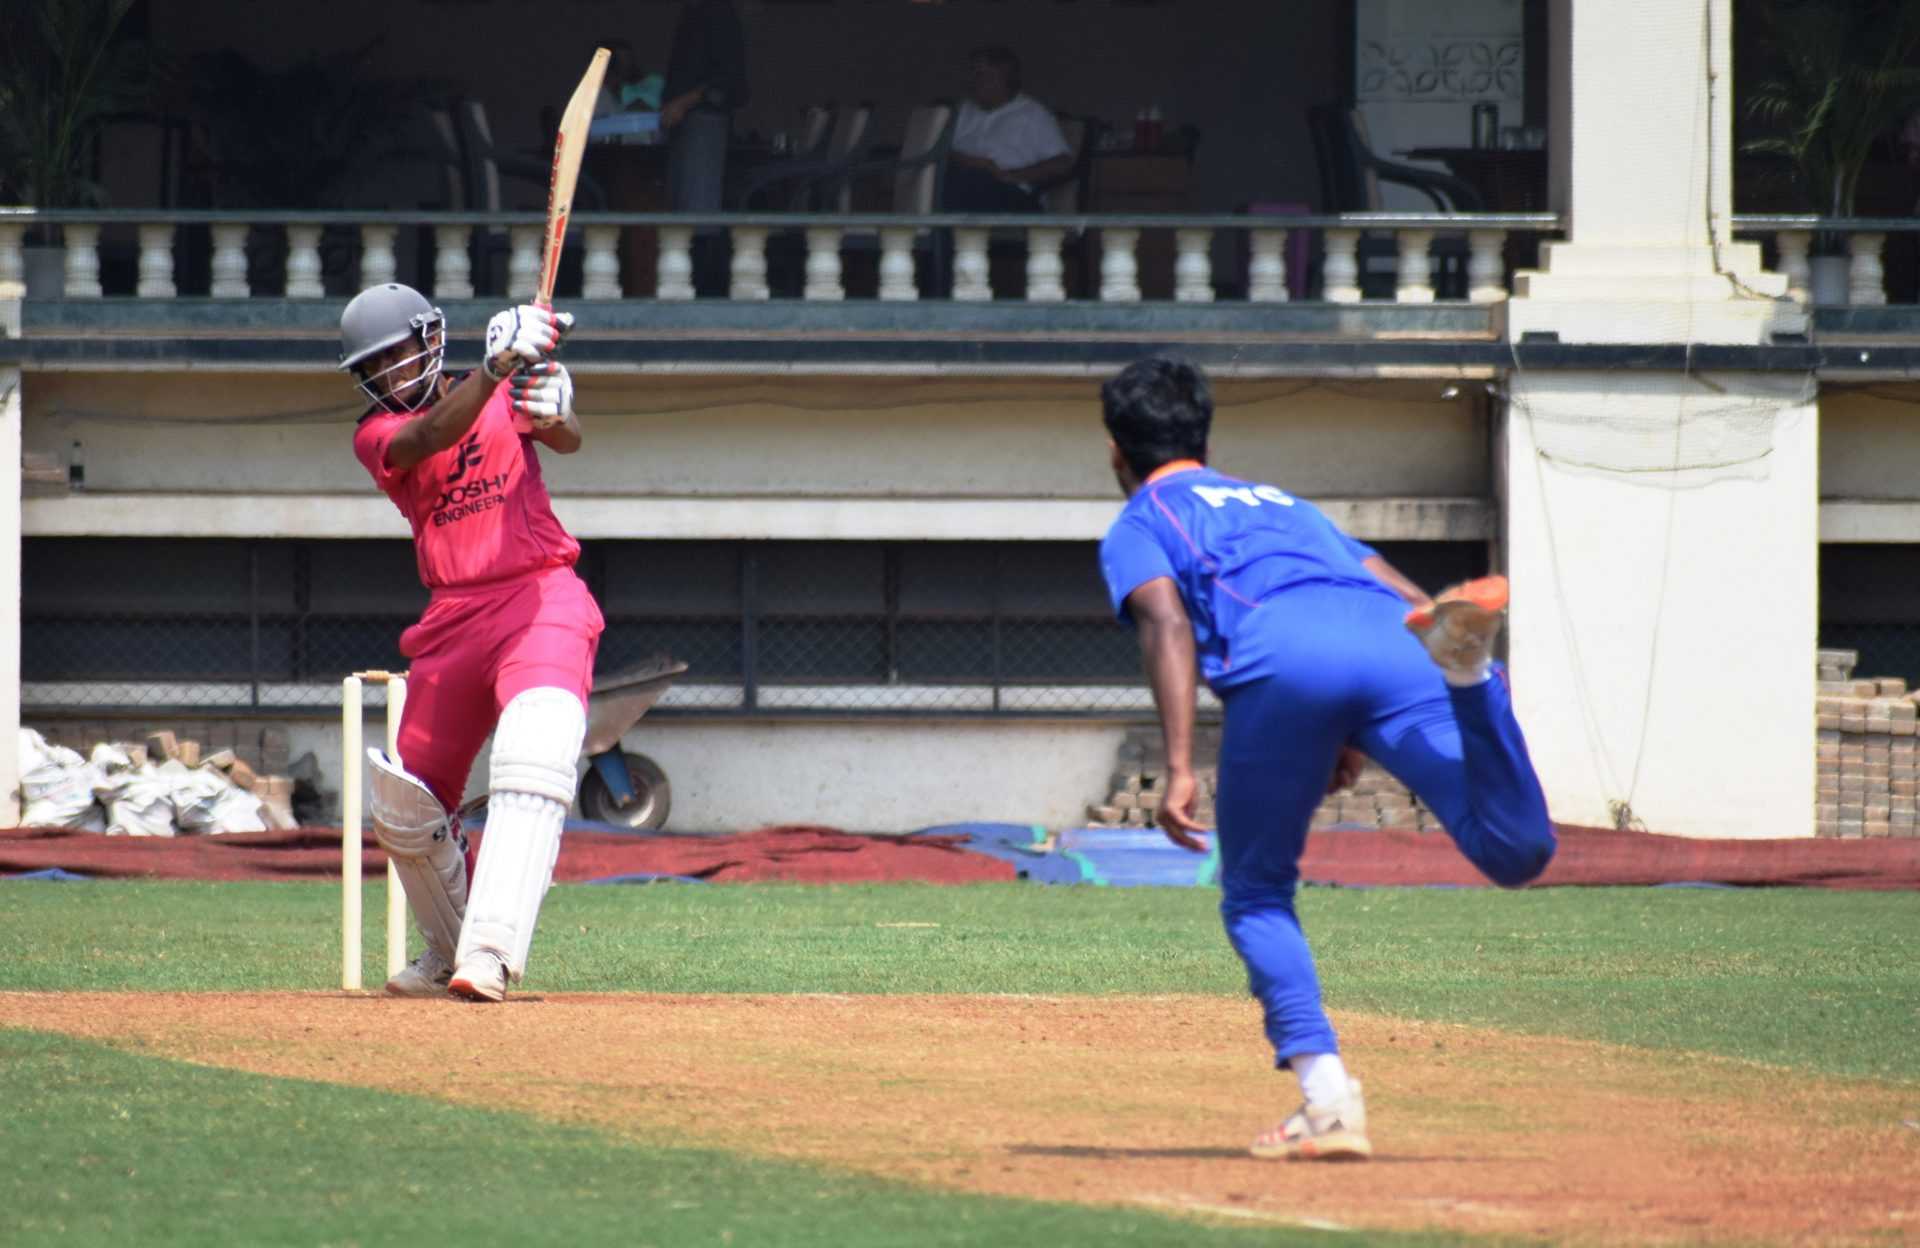 दोशी इंजिनियर्स करंडक आंतरक्लब 25 वर्षांखालील निमंत्रित क्रिकेट स्पर्धेत मेट्रो क्रिकेट क्लब संघाची शानदार सुरुवात